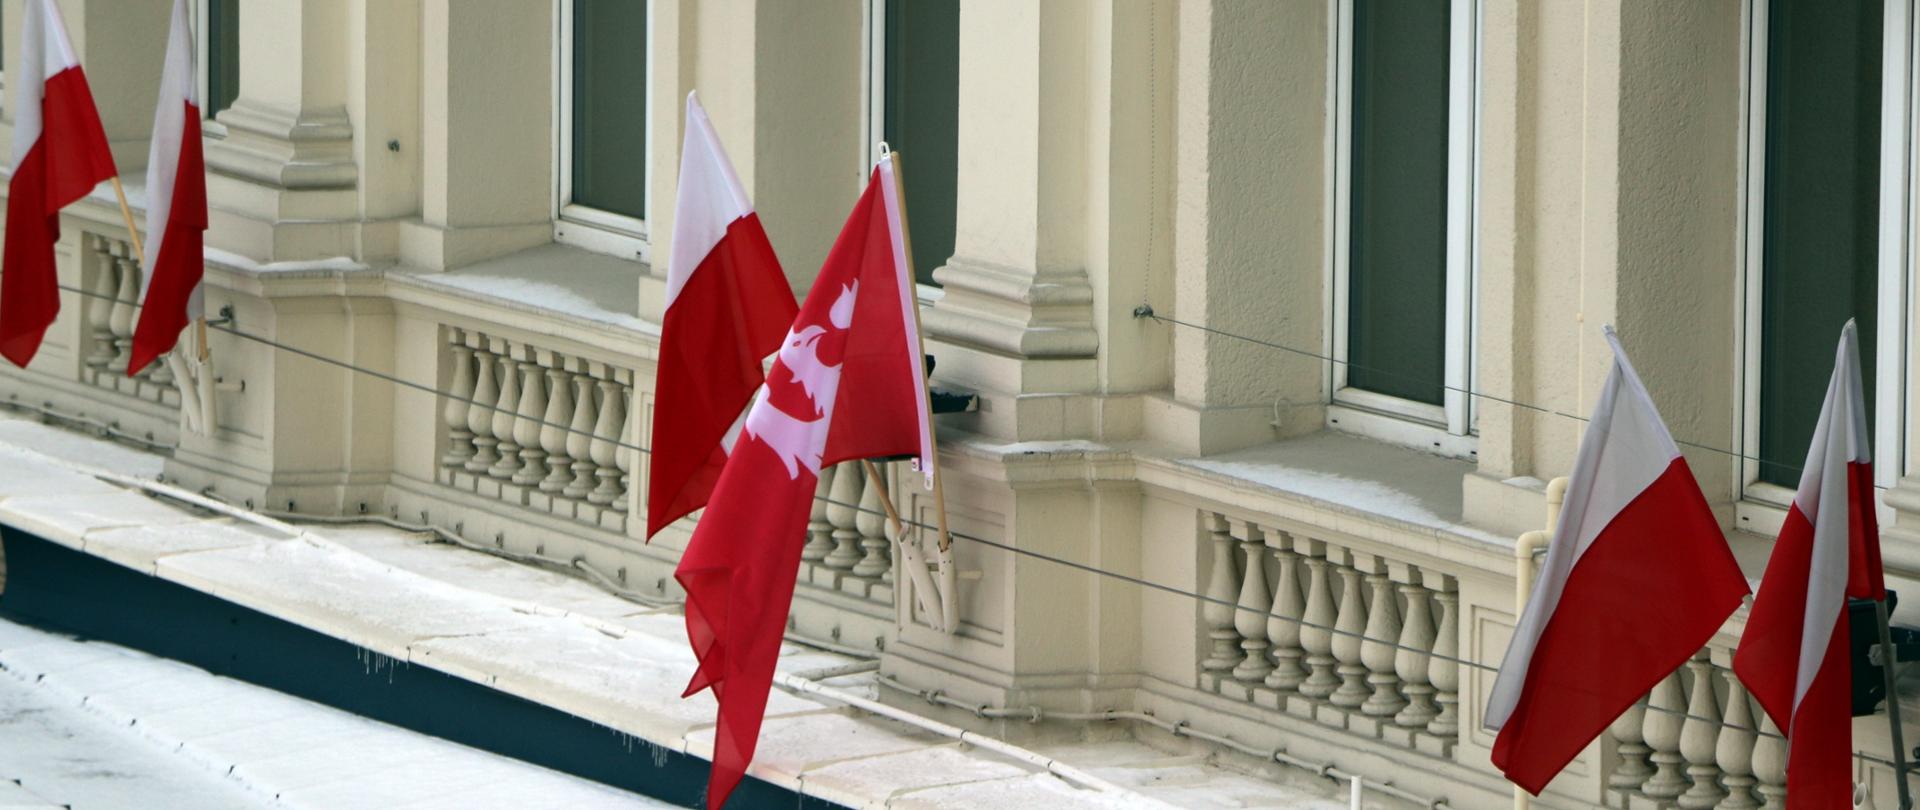 Flagi Polski oraz flaga powstania wielkopolskiego przedstawiająca orła w koronie na czerwonym tle znajdujące się na budynku Podkarpackiego Urzędu Wojewódzkiego w Rzeszowie